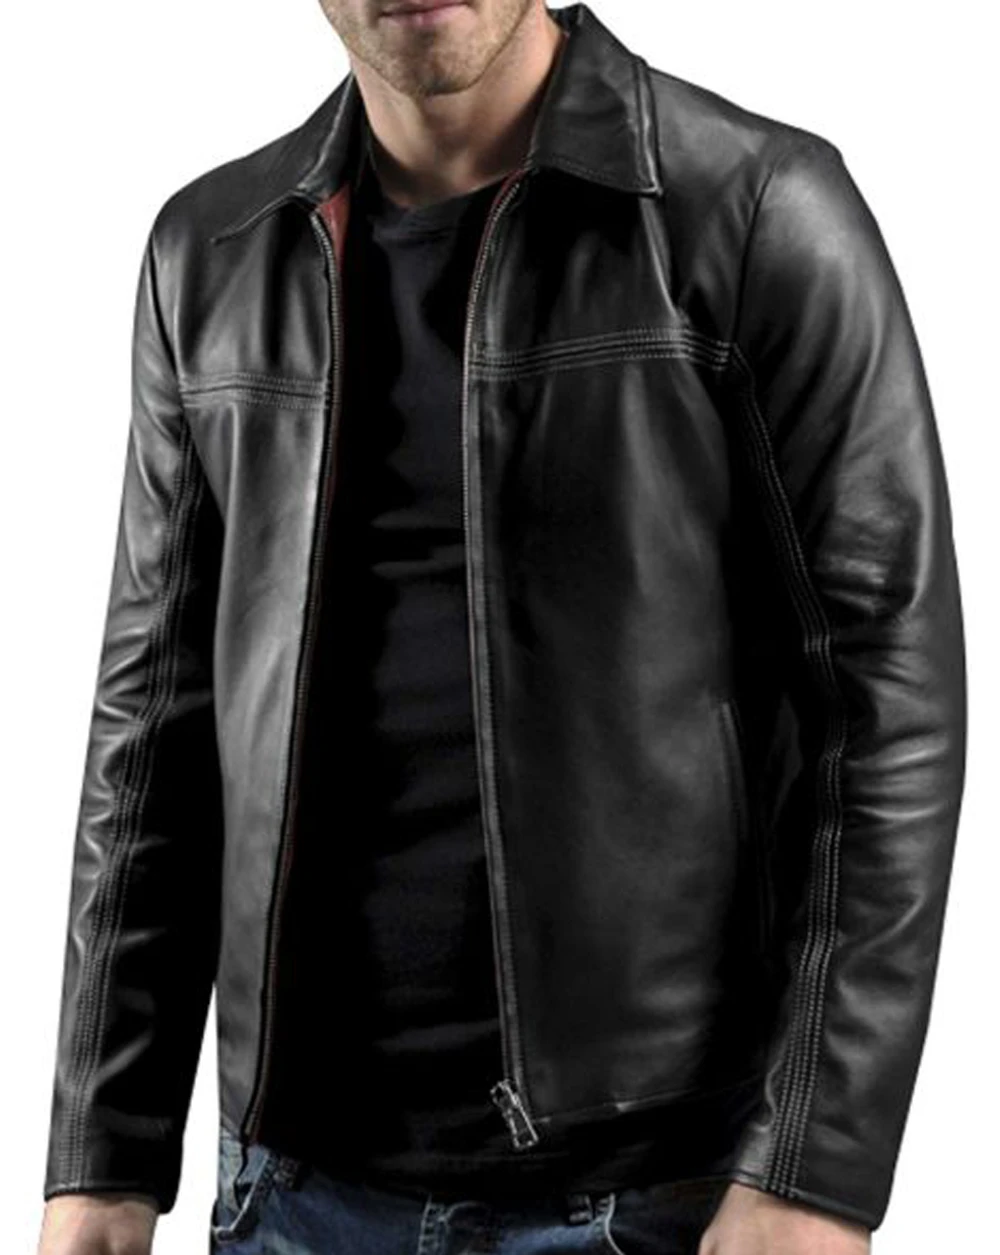 Daniel Craig Layer Cake Leather Jacket